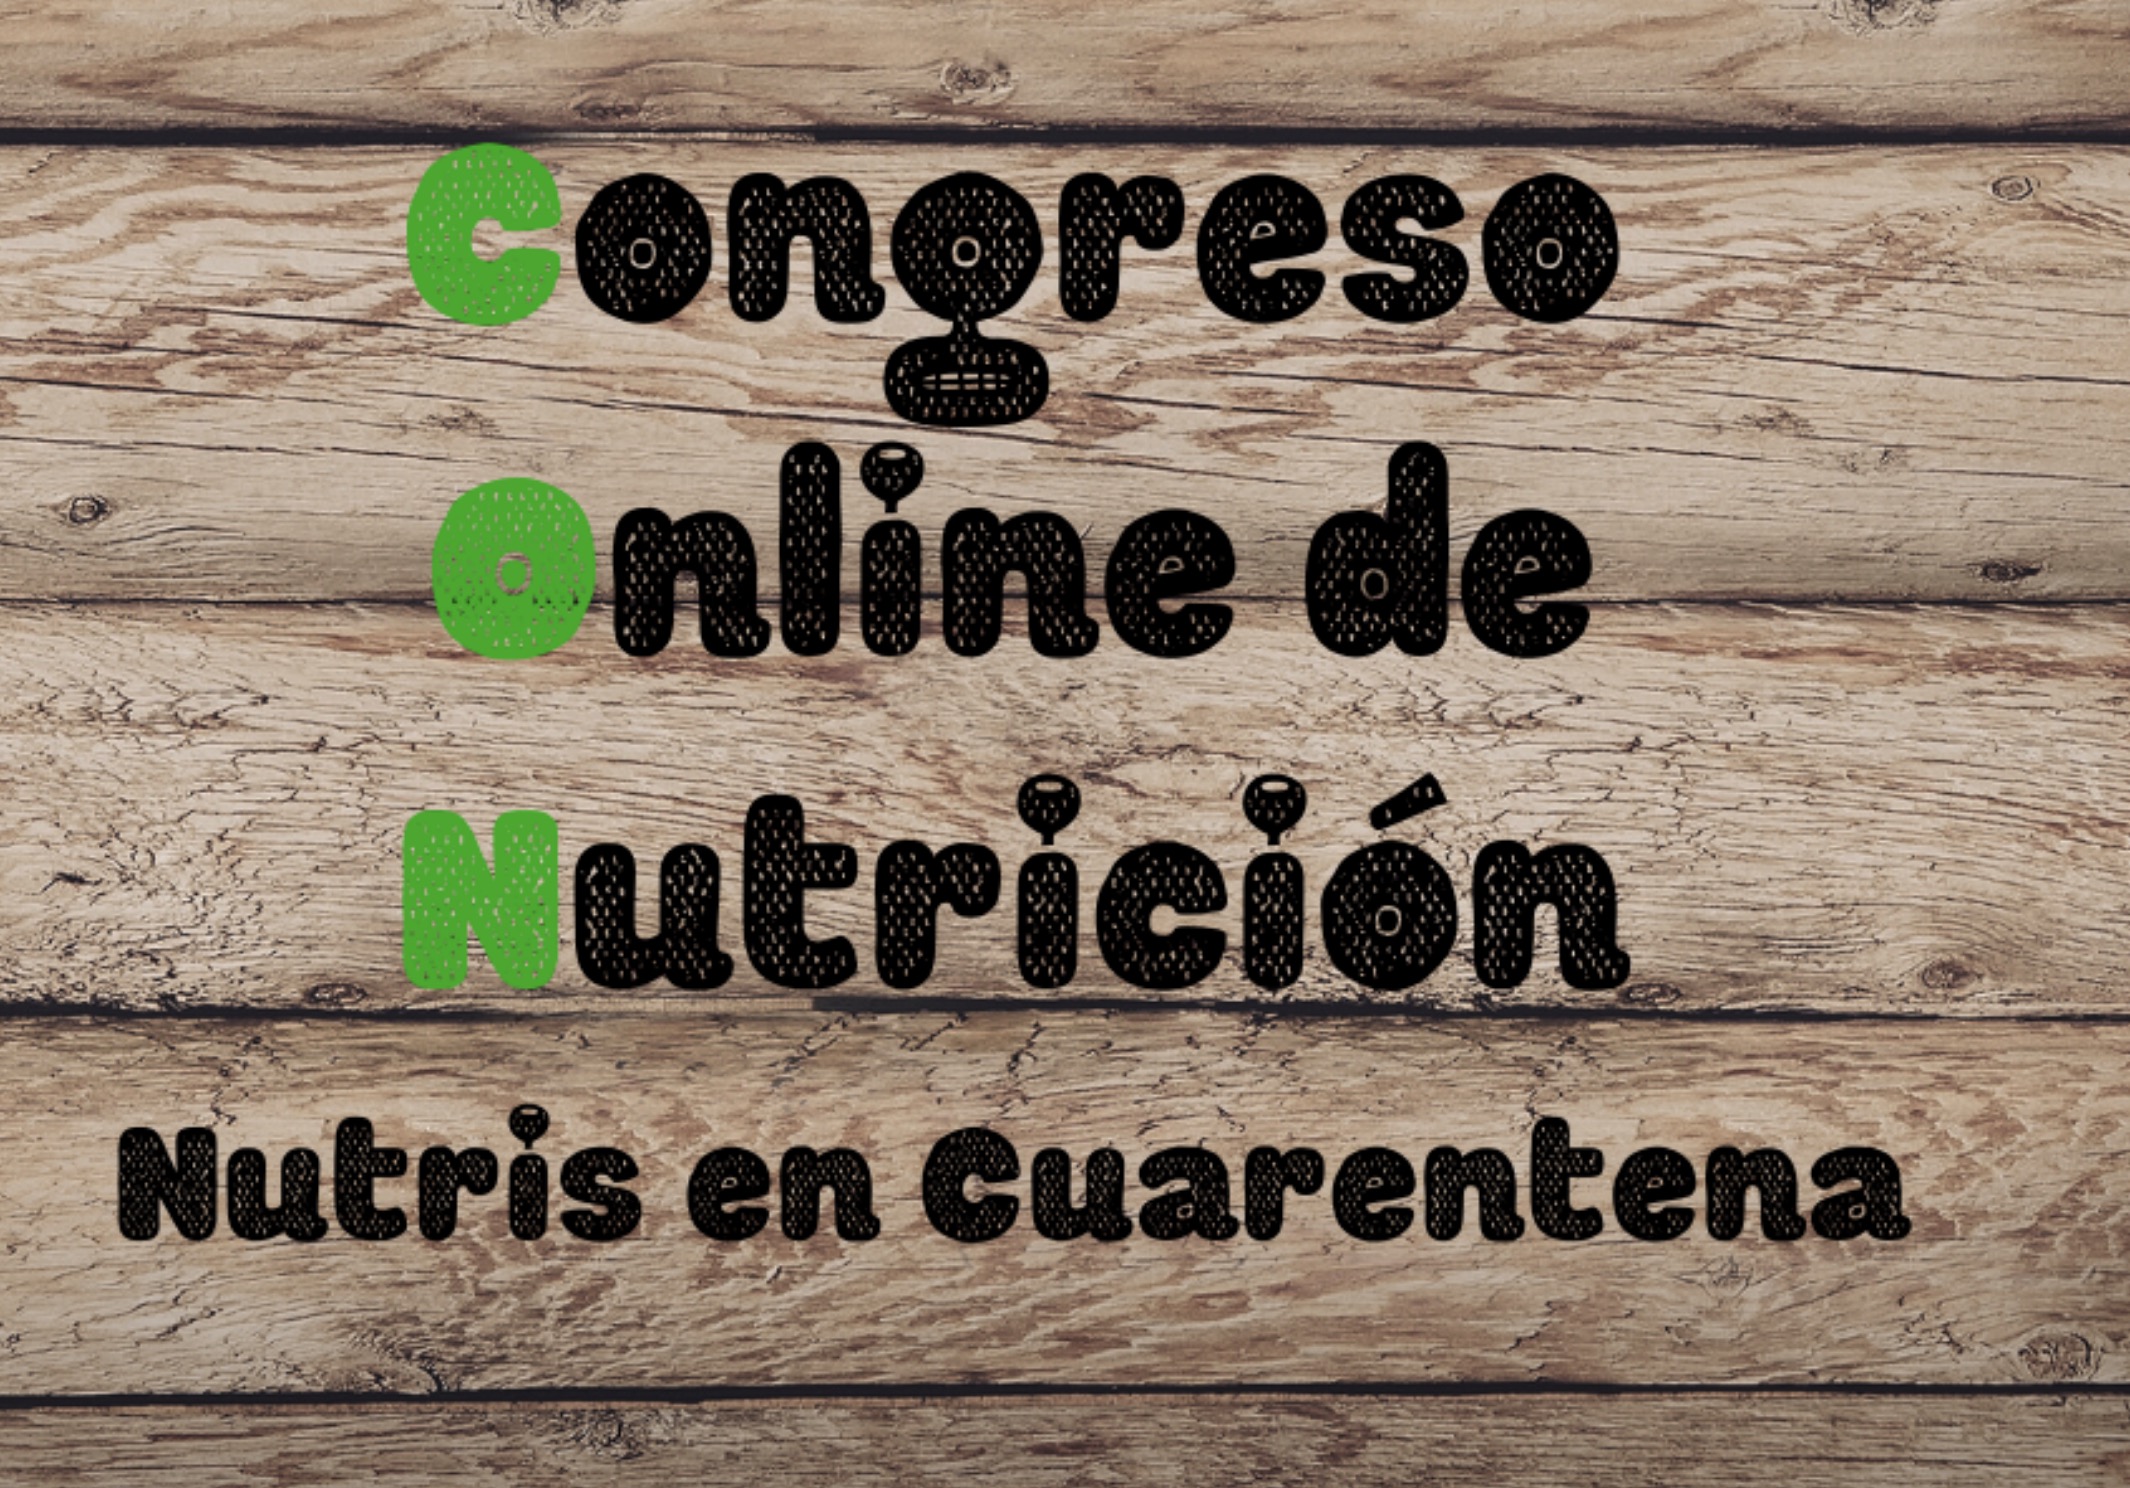 Primer congrés online de nutrició (gratuït, obert i solidari) 3,4,5 abril